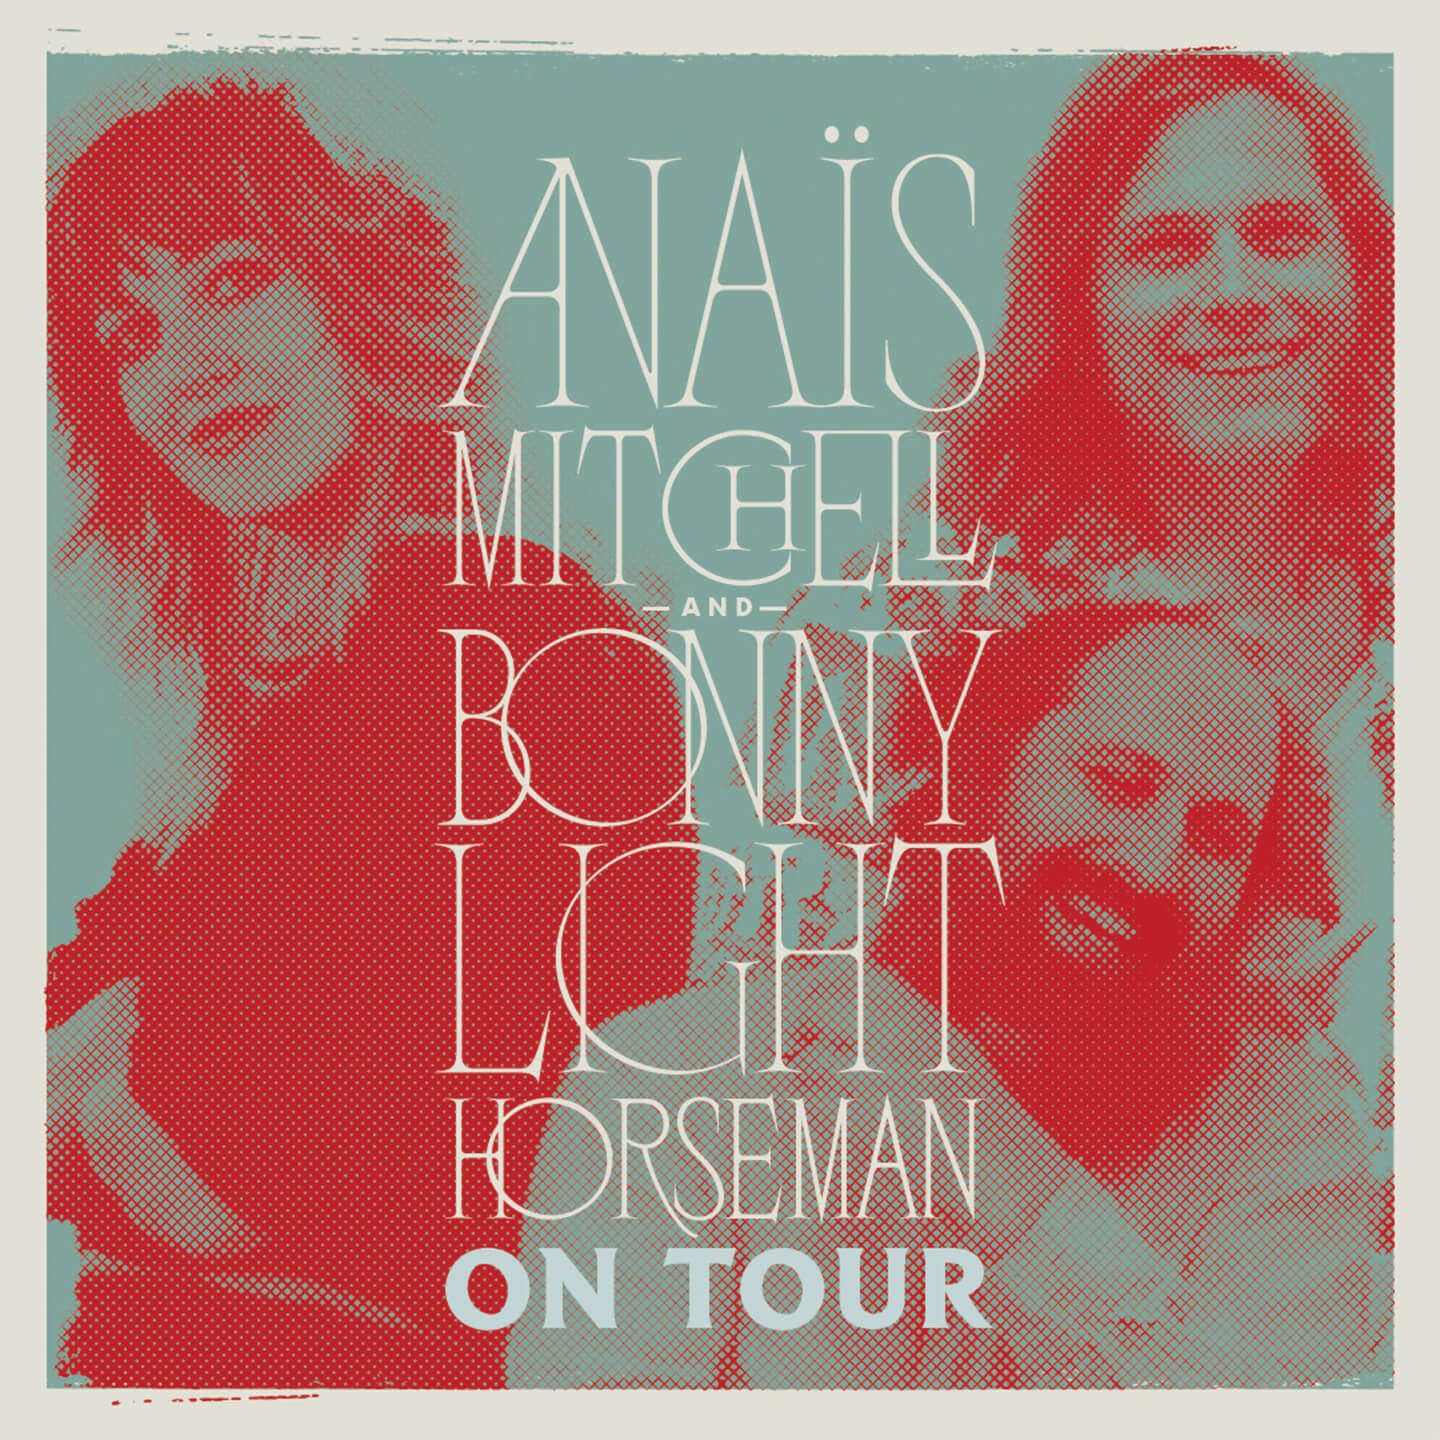 Anais Mitchell + Bonny Light Horseman